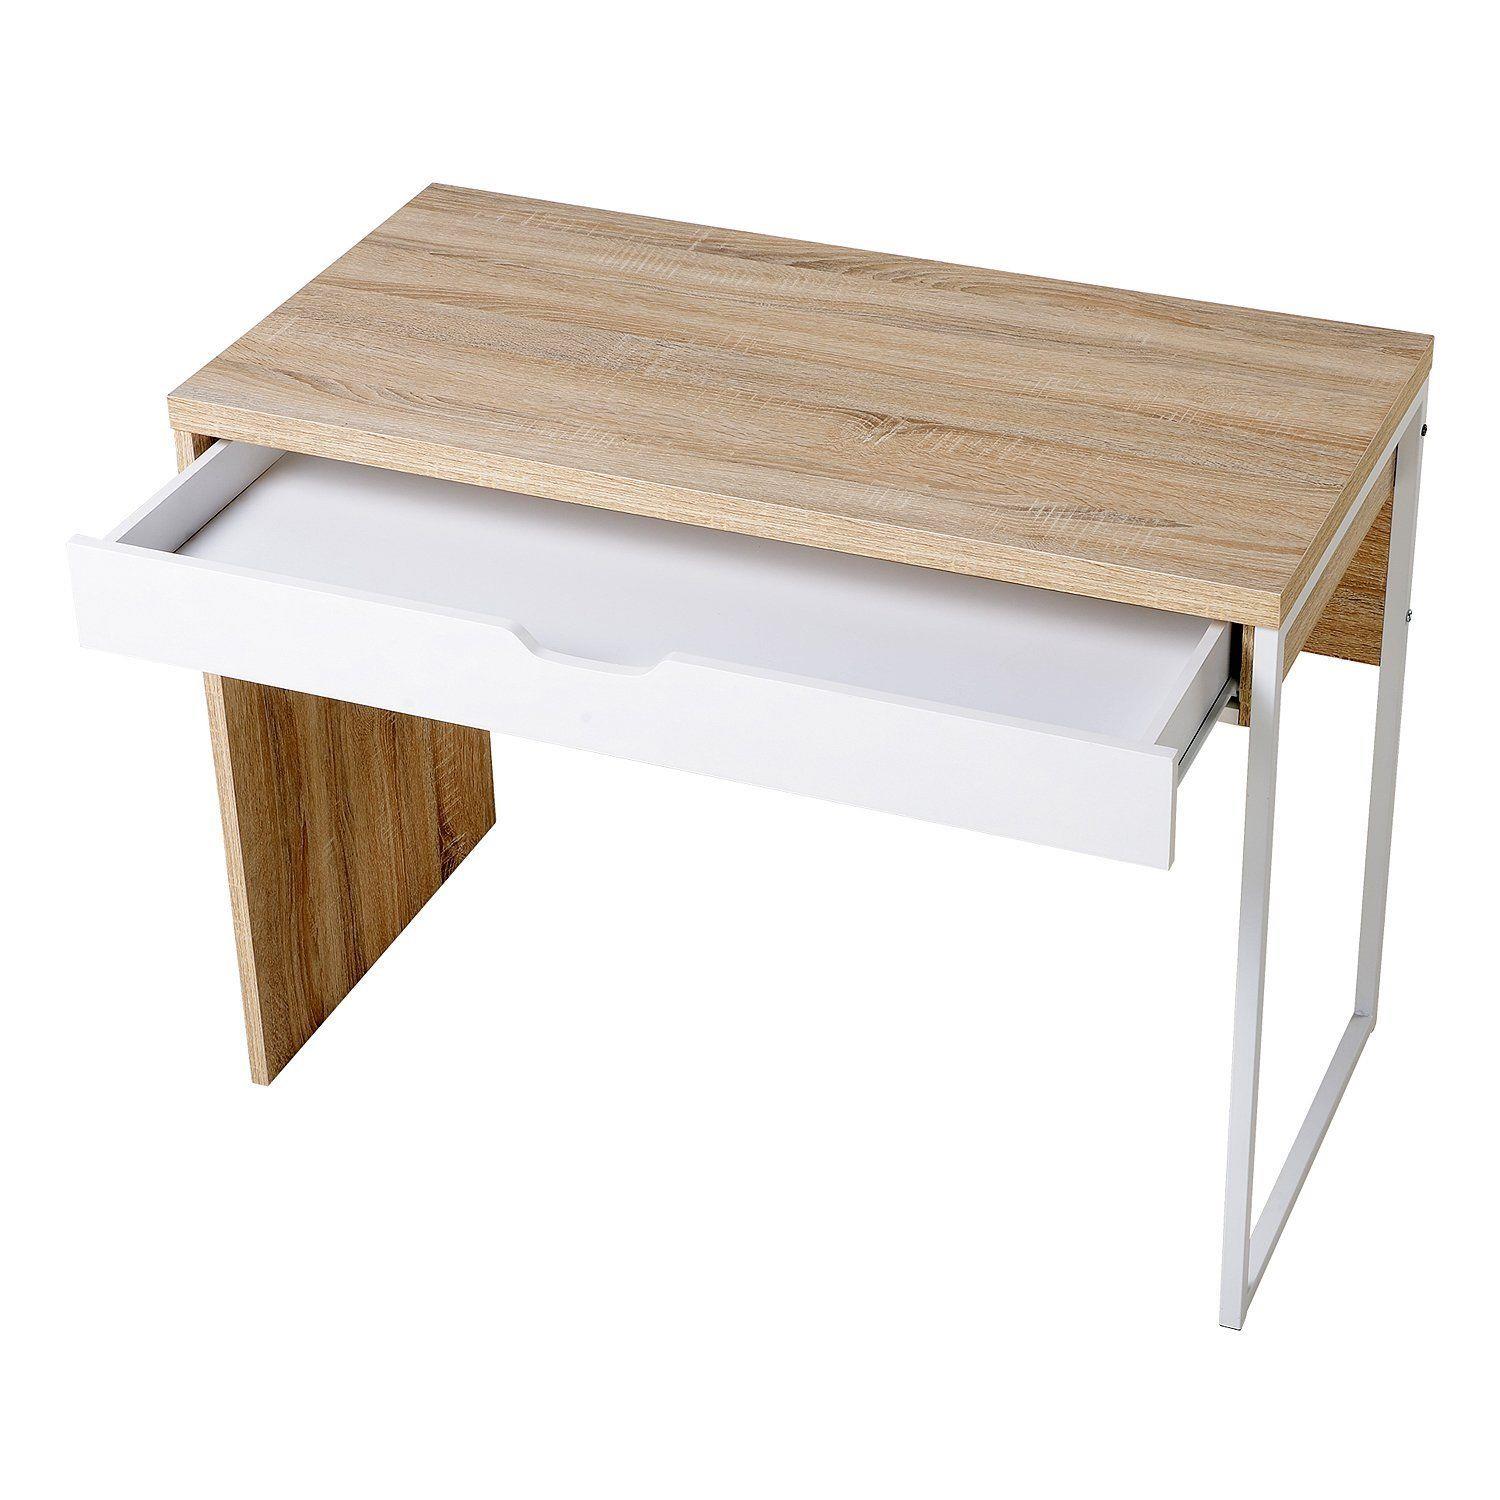 Hans mesa de centro de madera lacada en blanco pequeña